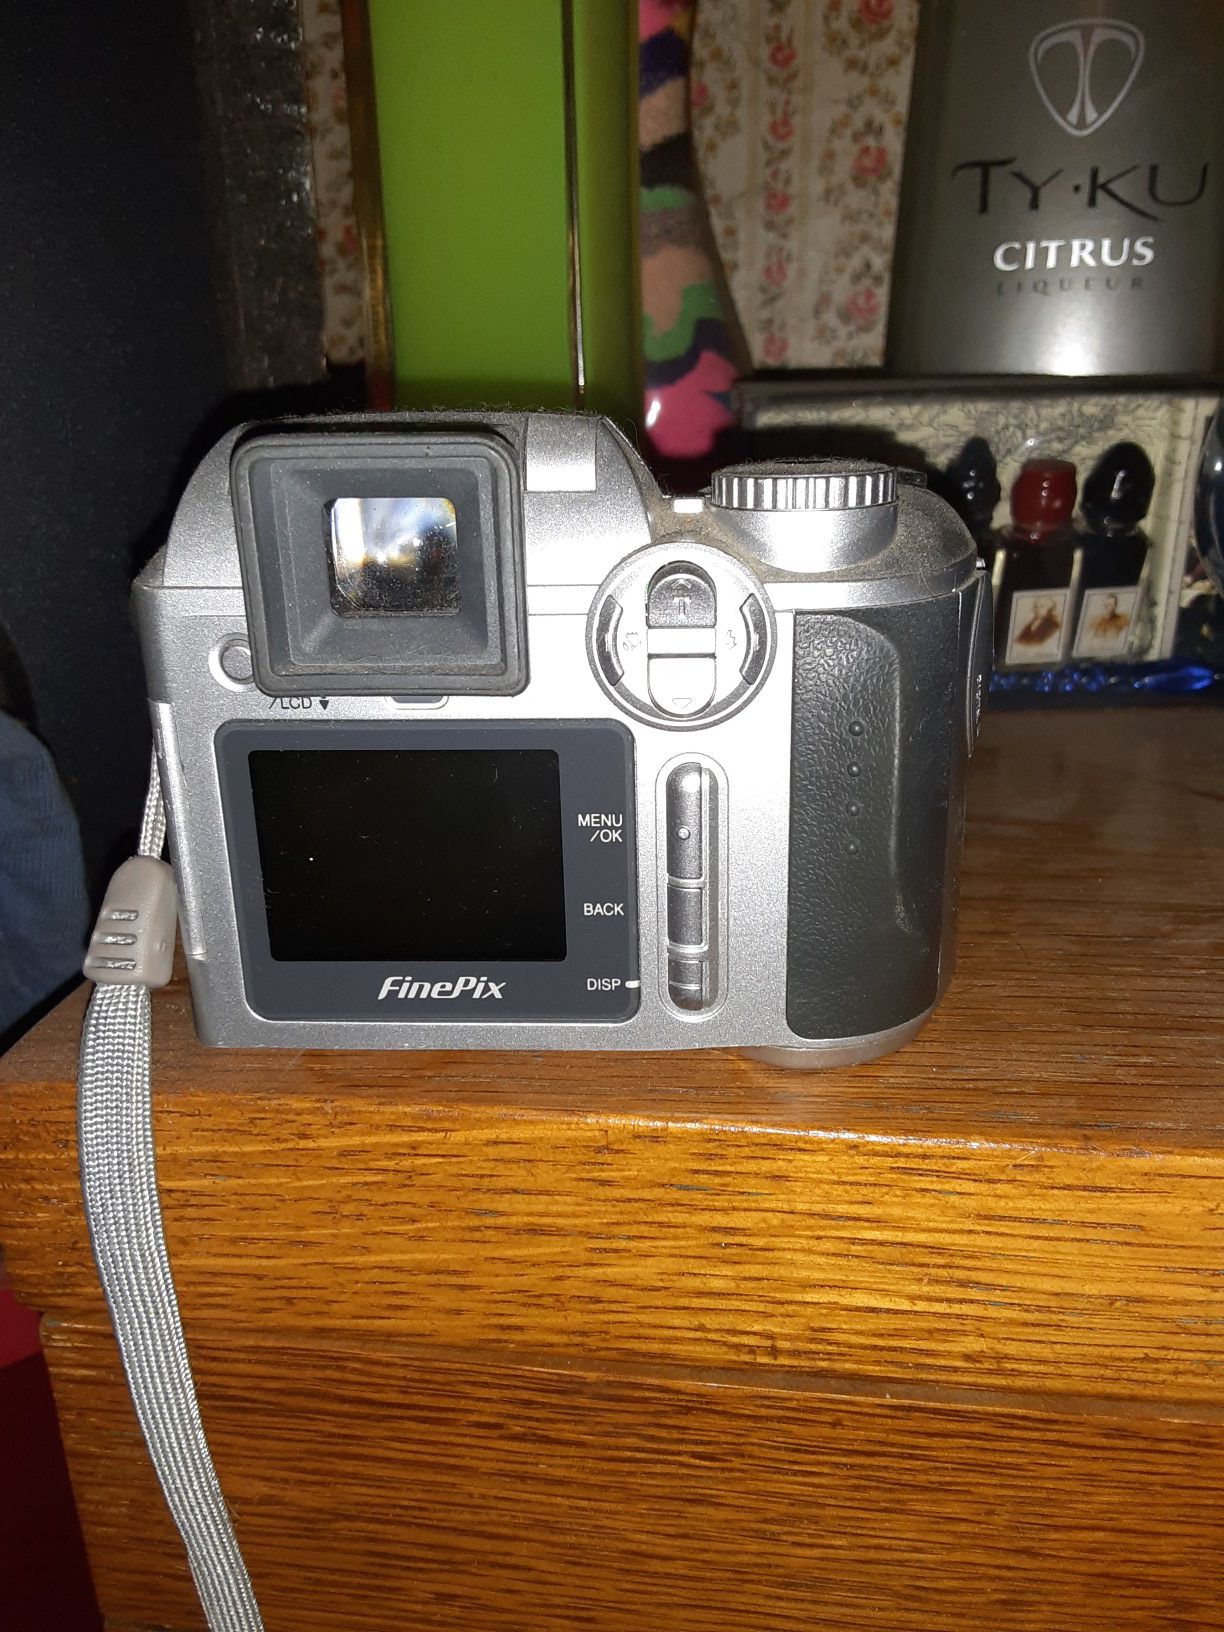 Finepix digital camera